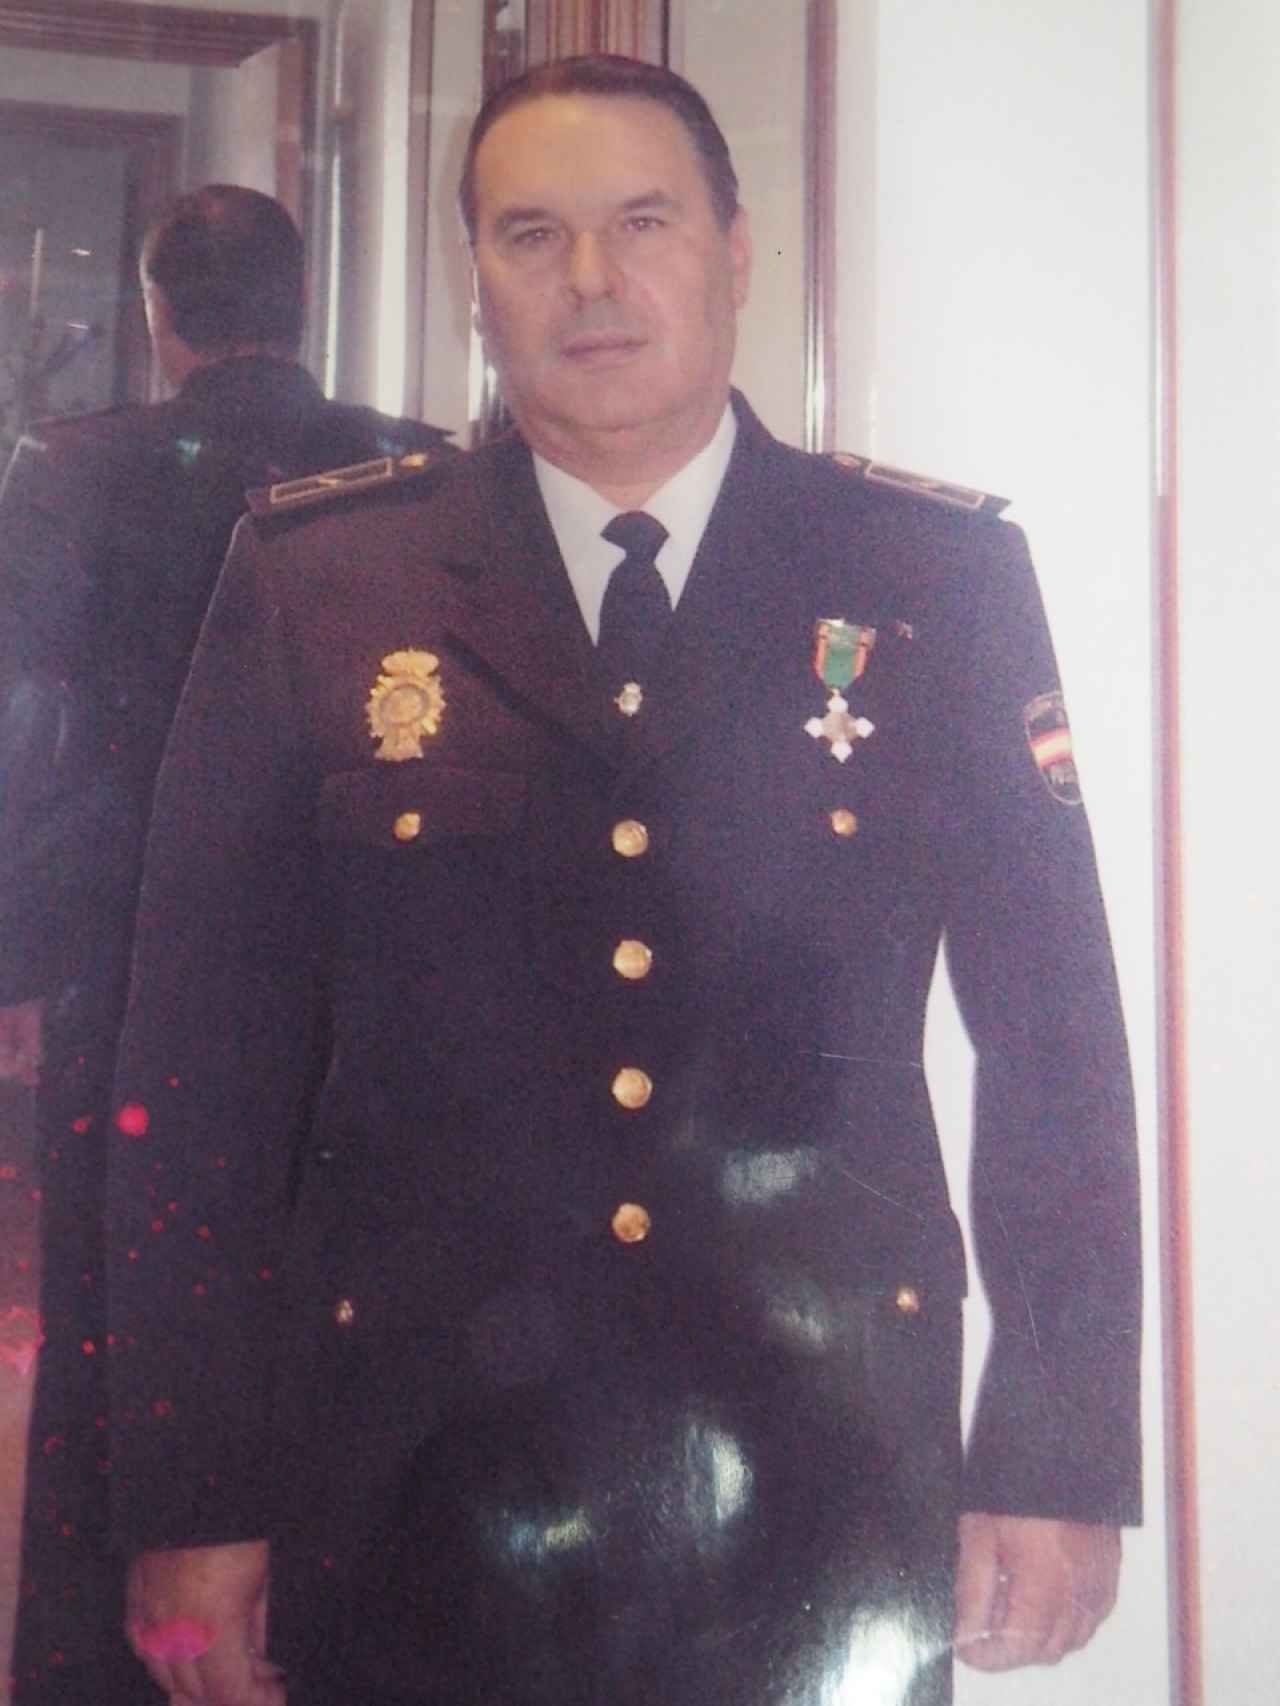 Ricardo Morente ingresó en 1971 en la Policía. Nacido en Córdoba, lleva toda su vida en Sevilla, donde ahora reside tras abandonar el cuerpo en 2012, cuando se jubiló.